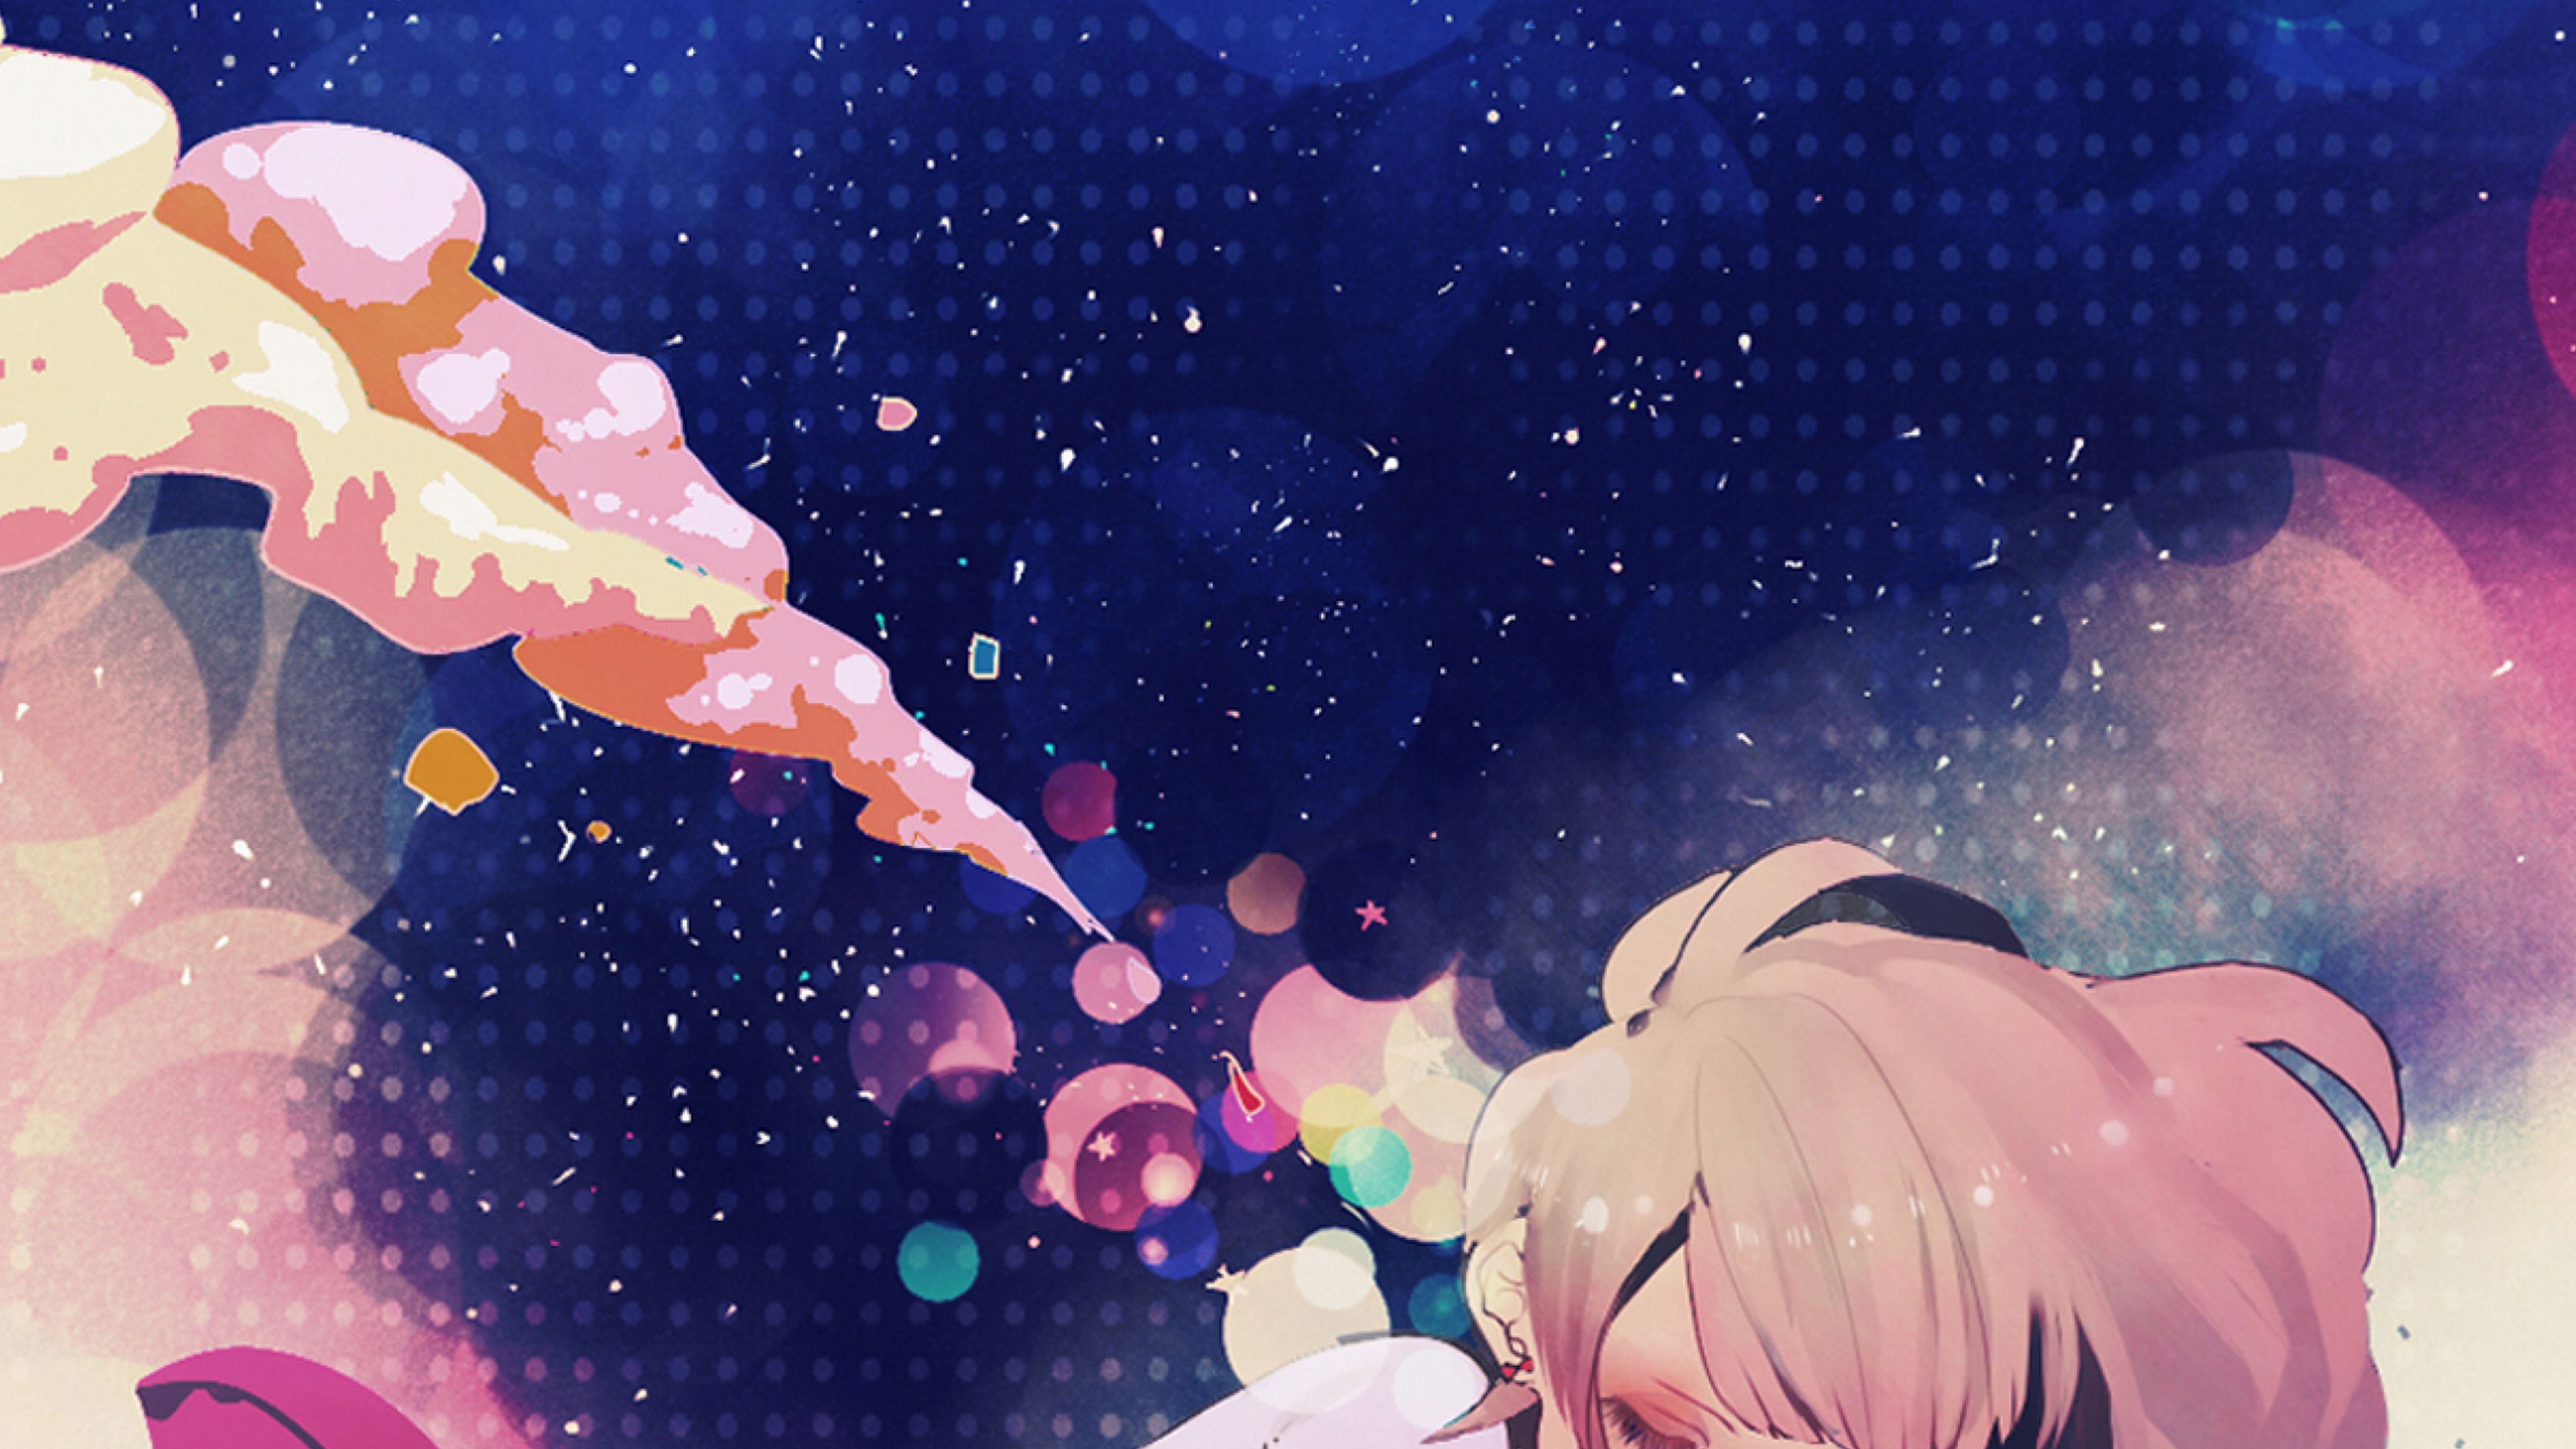 wallpaper for desktop, laptop. sleeping girl anime art illustration